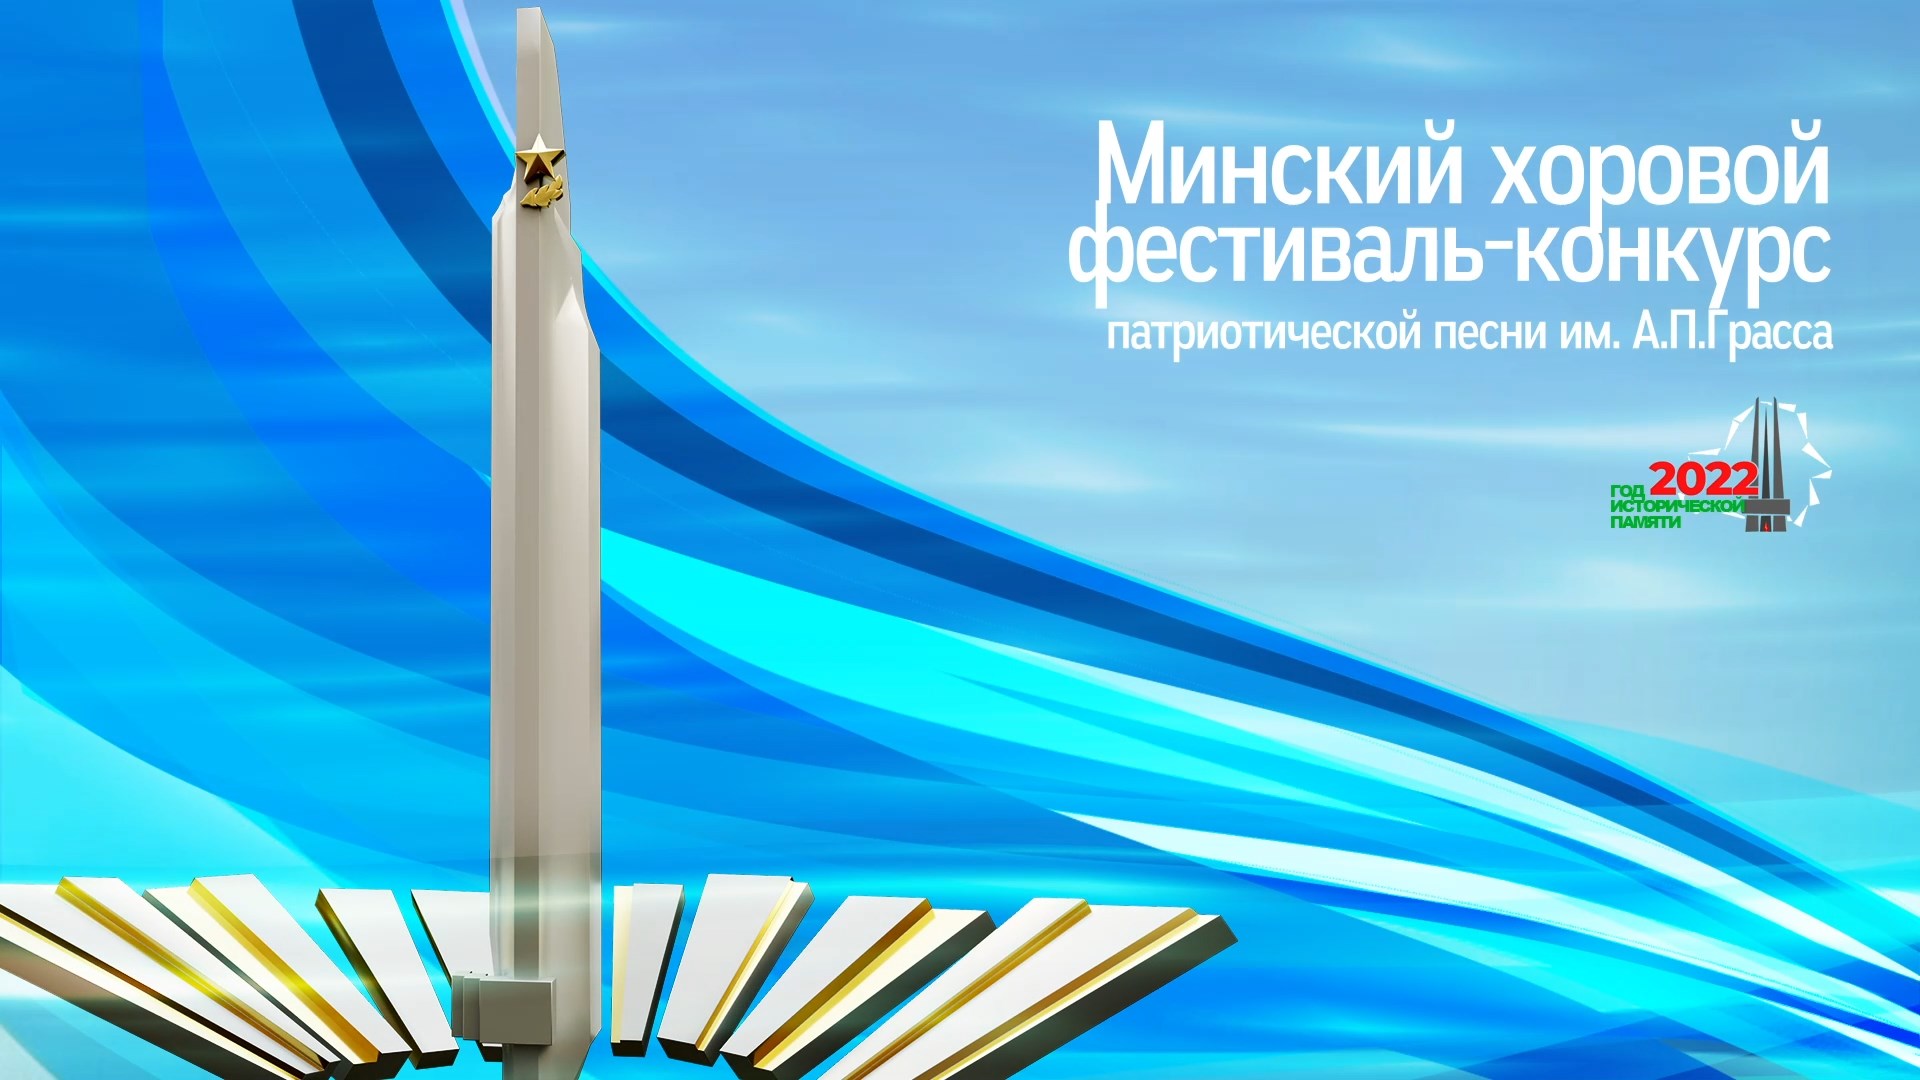 В городе-герое Минске с 23 по 25 ноября проходит Минский хоровой фестиваль-конкурс патриотической песни имени А.П. Грасса